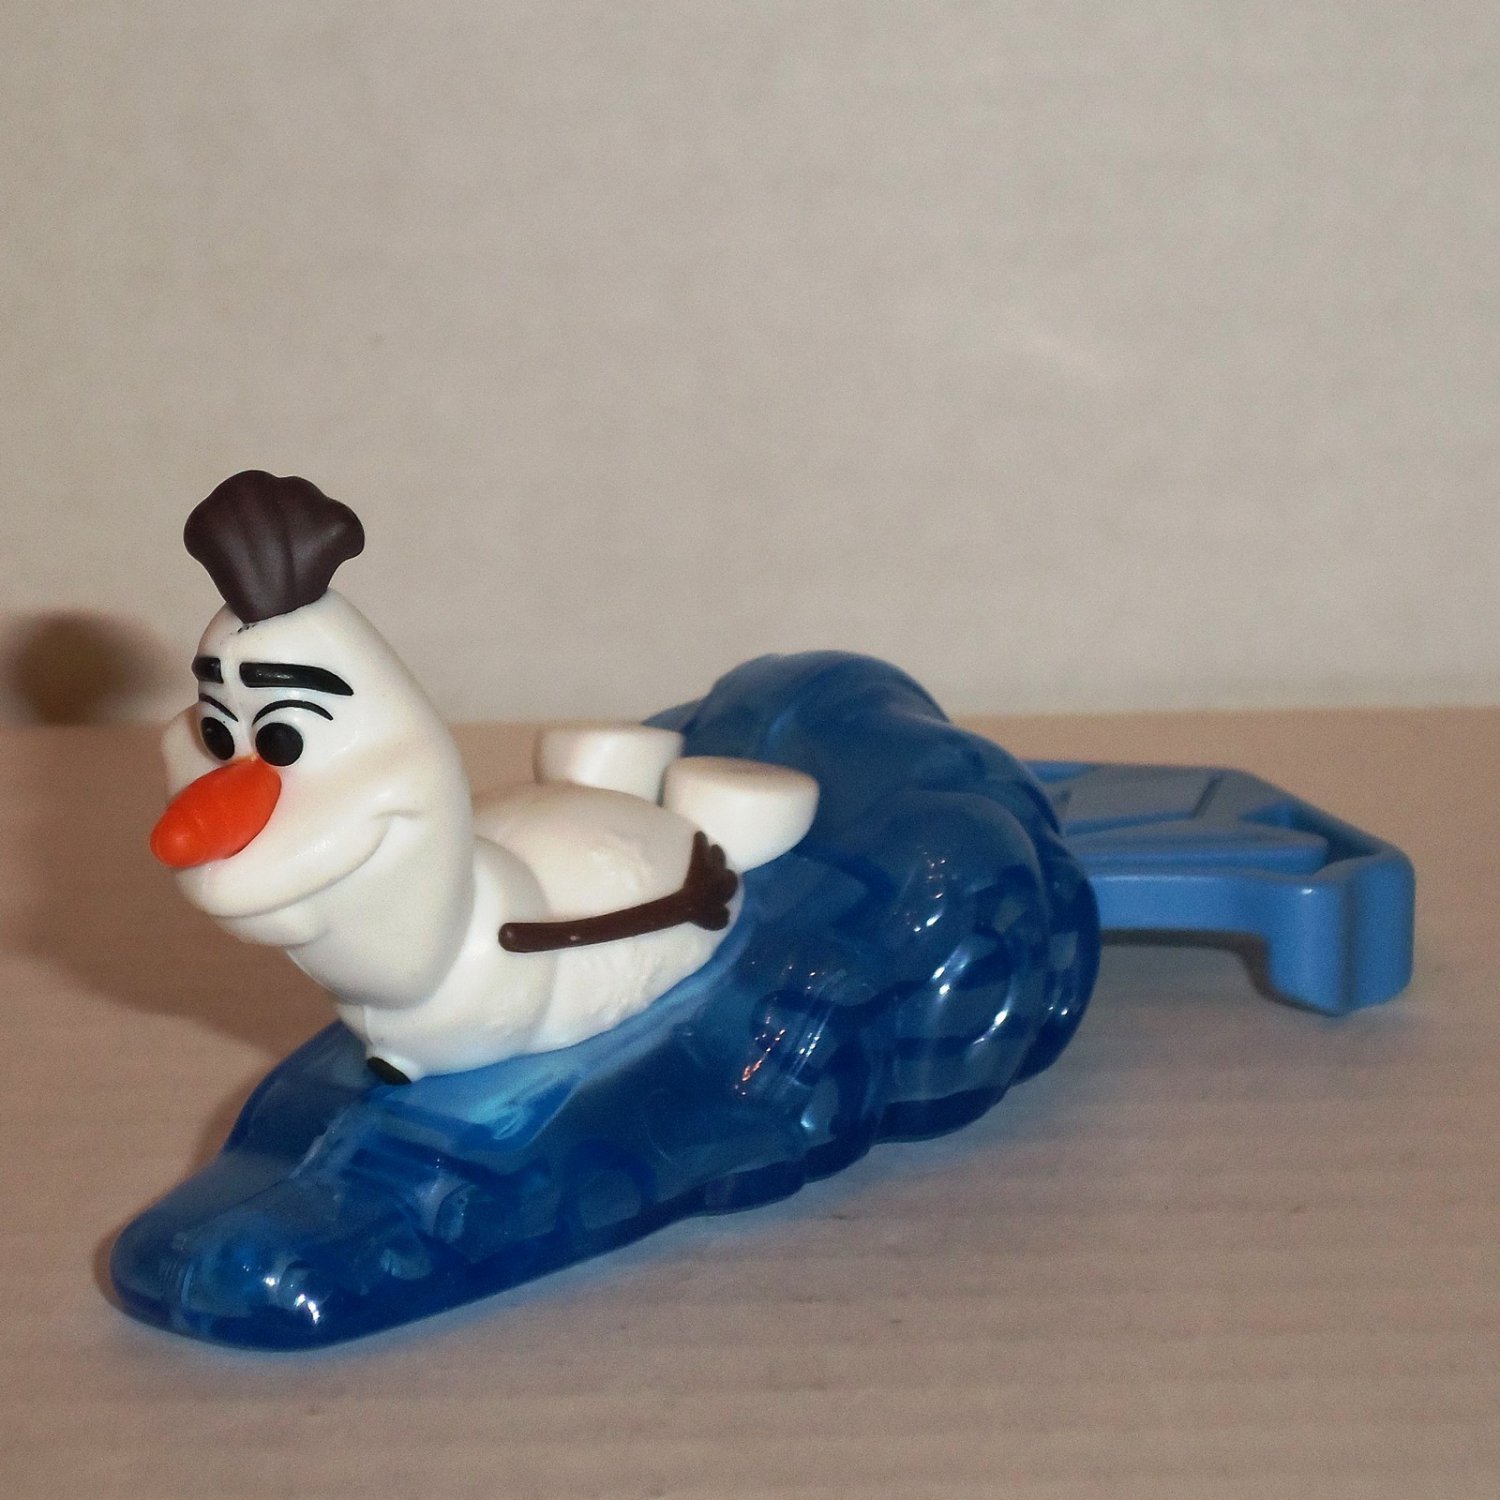 McDonald's Happy Meal Toy Disney's Frozen II #2 Olaf 